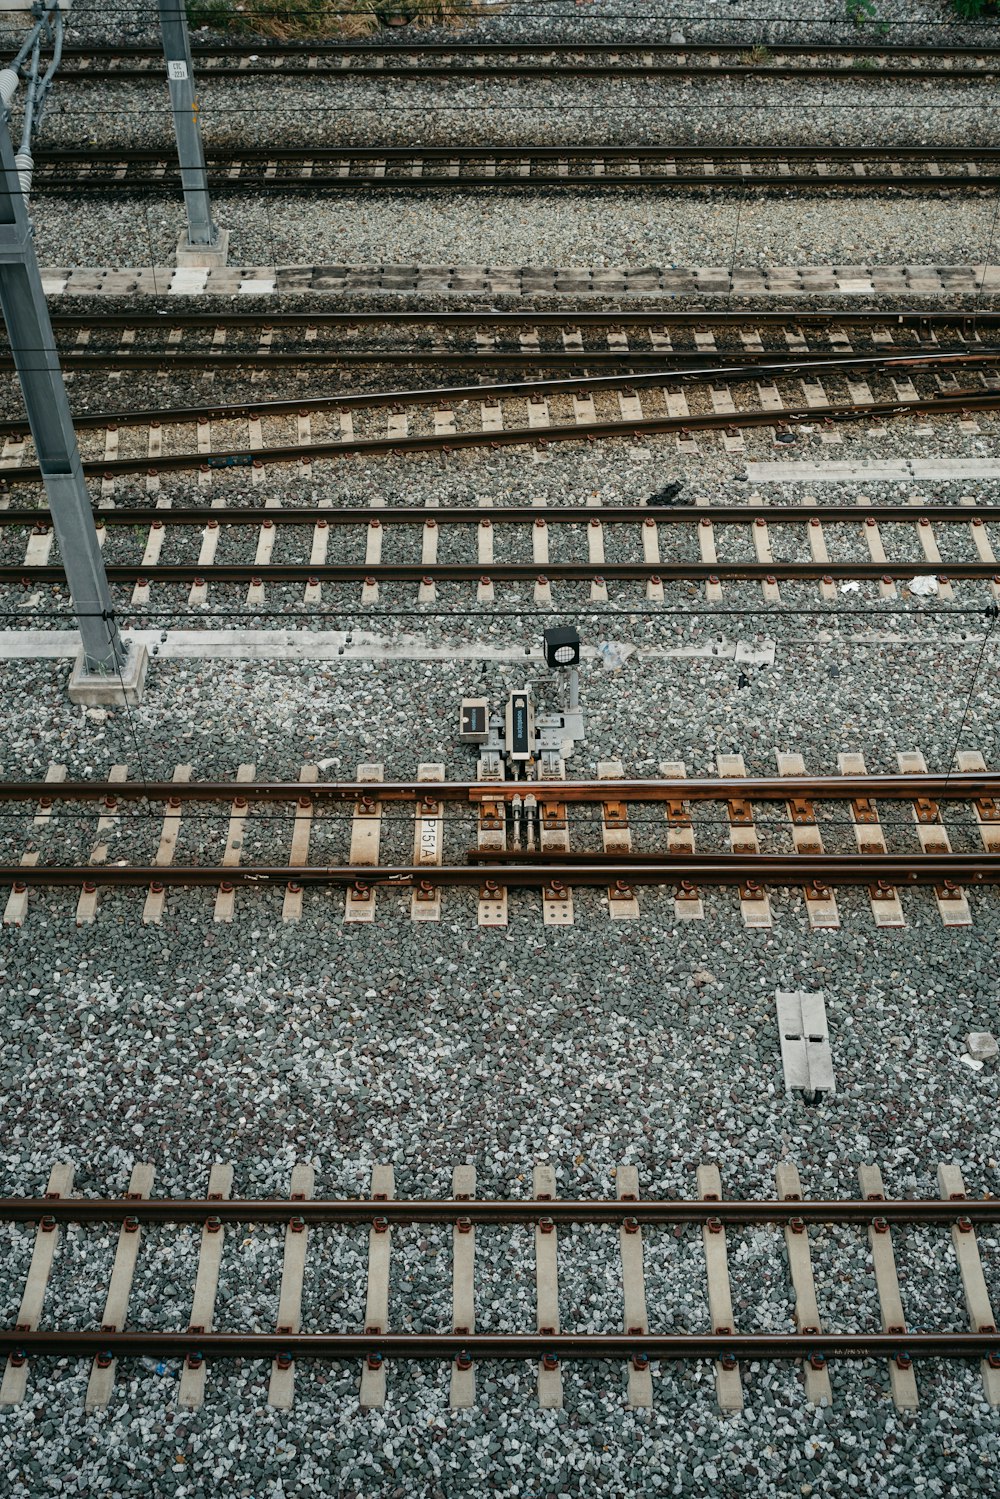 eine Ansicht von oben auf eine Bahnstrecke mit mehreren Zügen